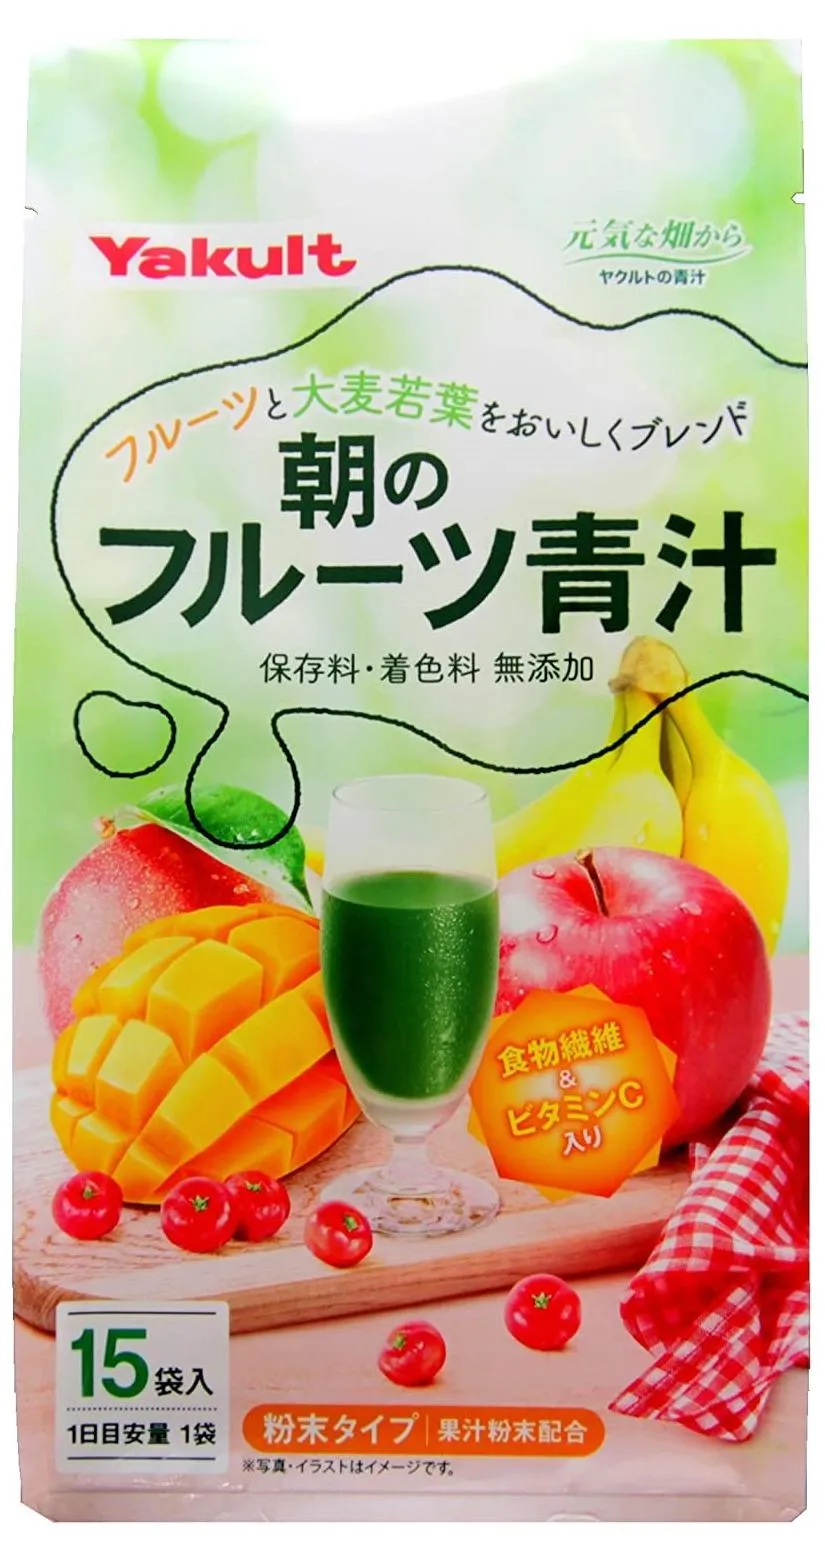 Аодзиру на основе фруктов Yakult Morning Aojiru and Fruits